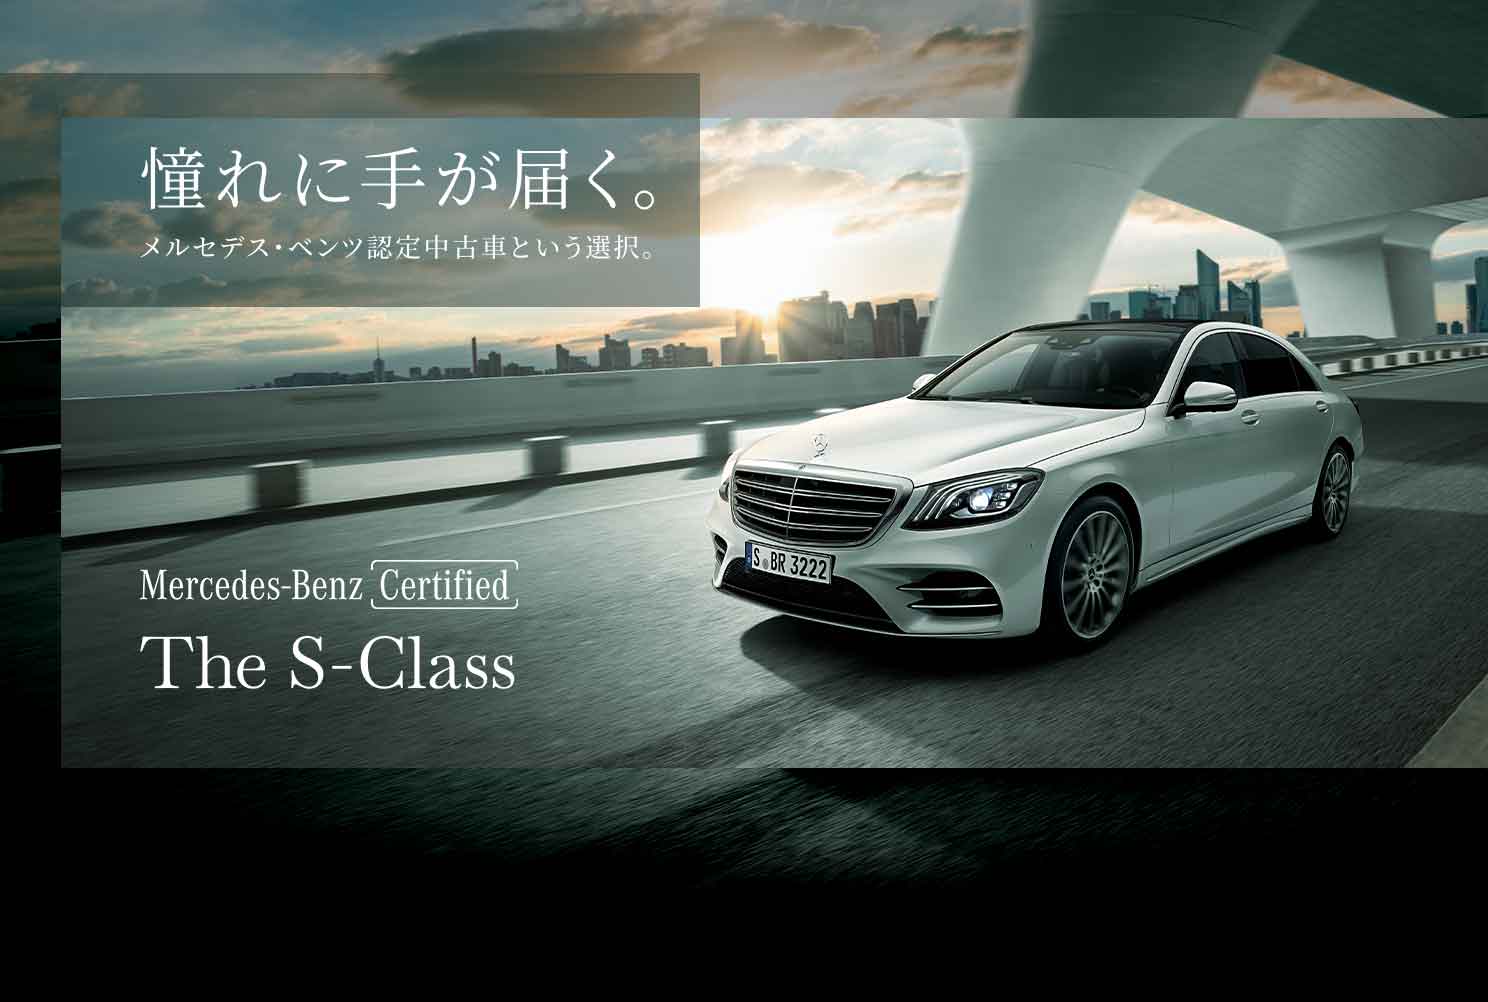 憧れに手が届く。メルセデス・ベンツ認定中古車という選択。Mercedes-Benz Certified The S-Class